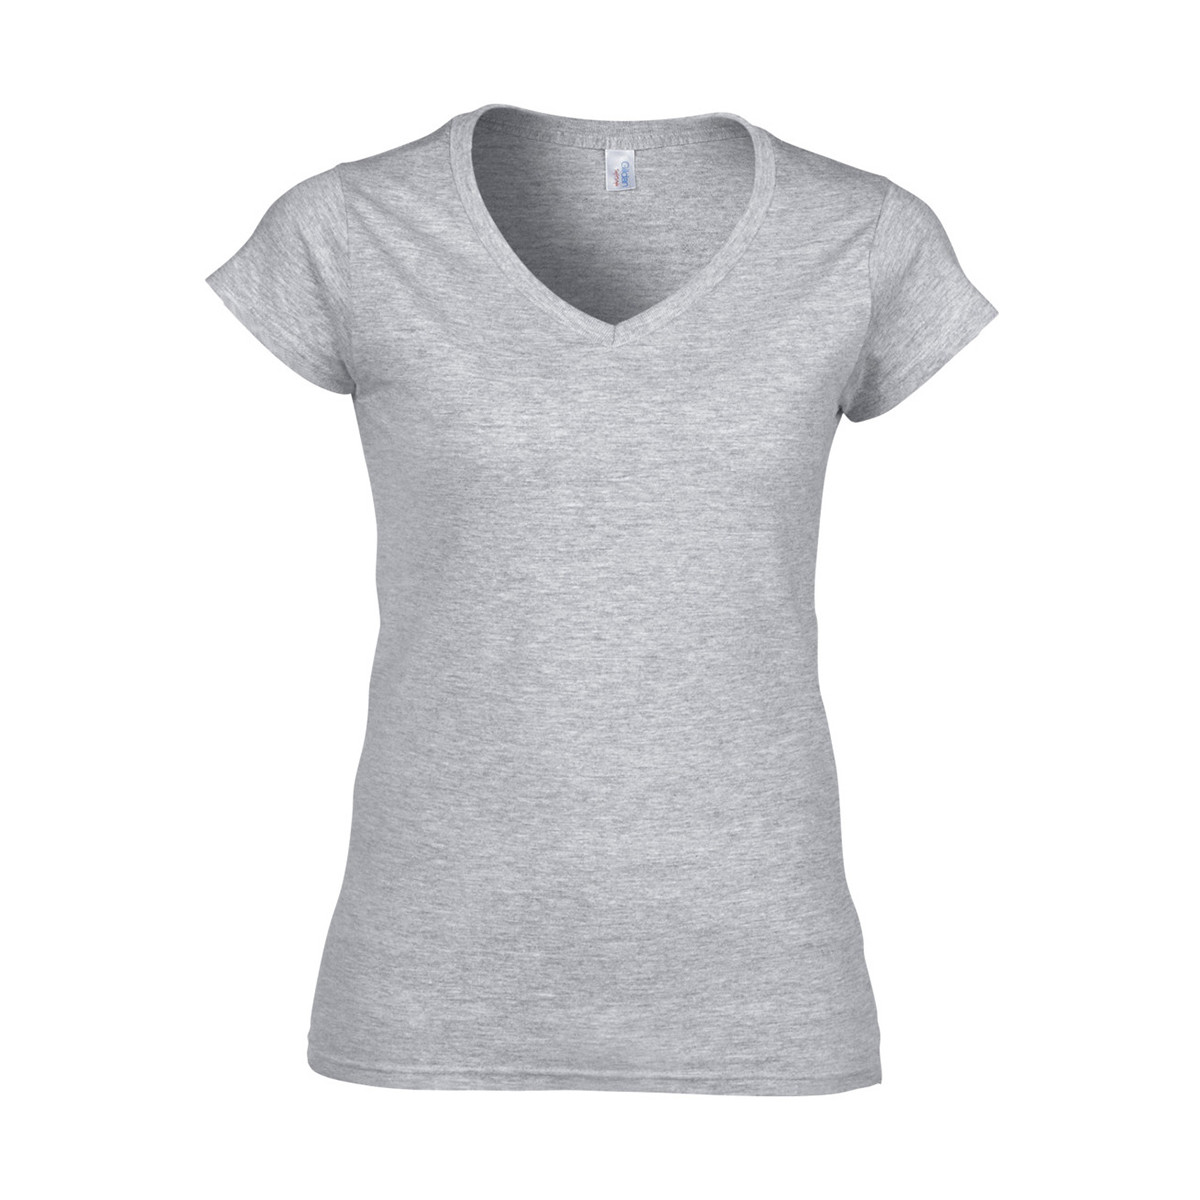 Vêtements Femme T-shirts manches courtes Gildan Soft Style Gris